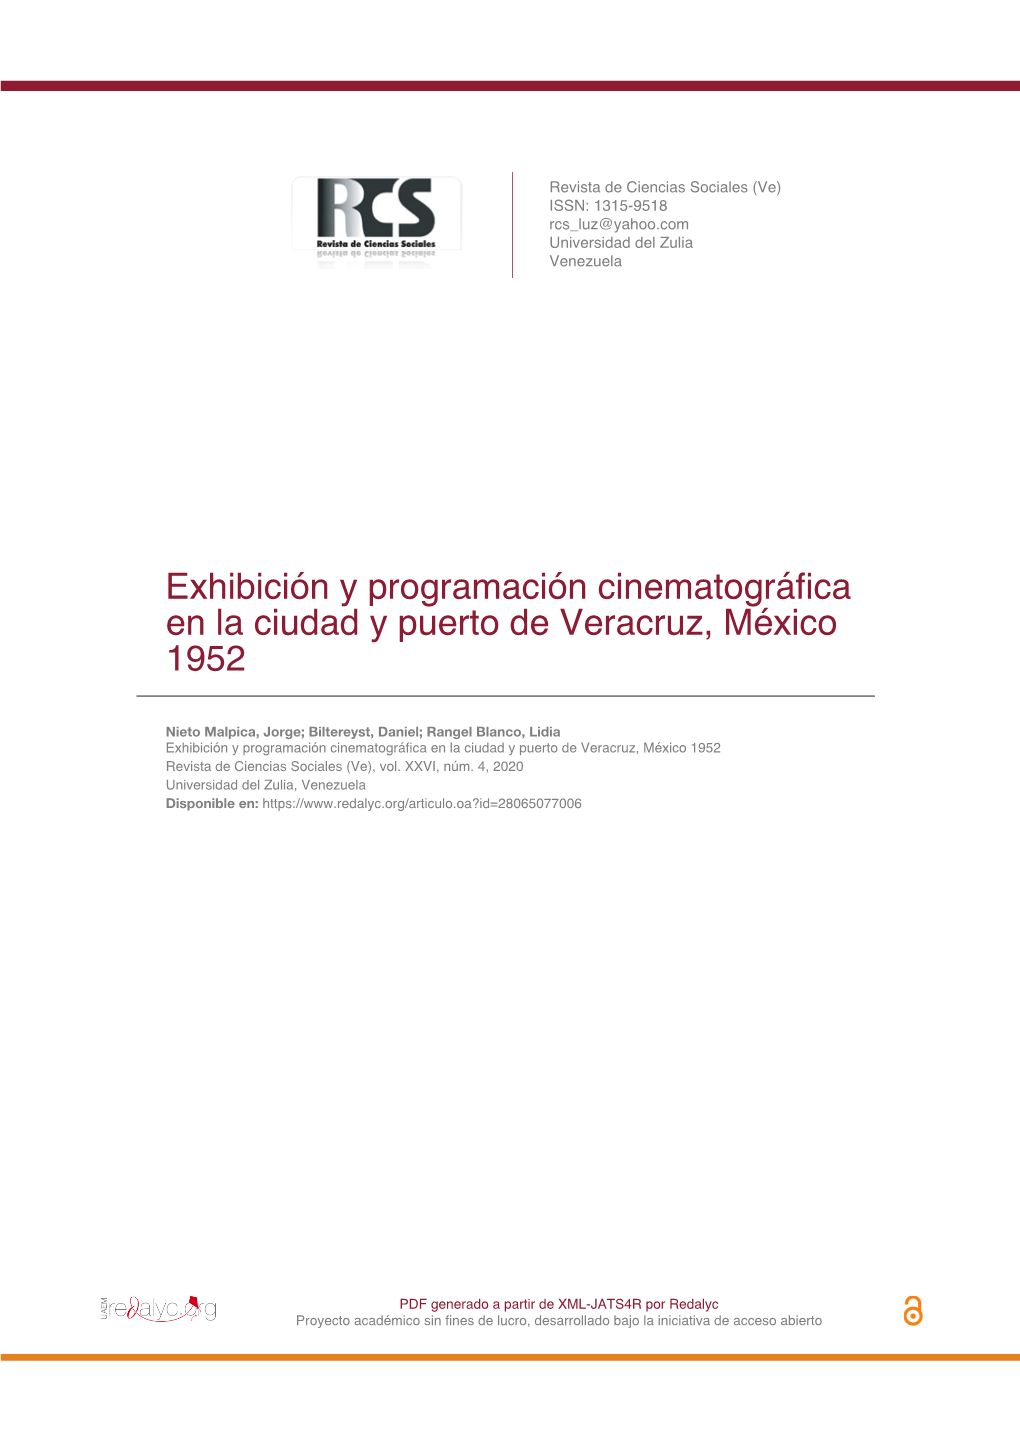 Exhibición Y Programación Cinematográfica En La Ciudad Y Puerto De Veracruz, México 1952